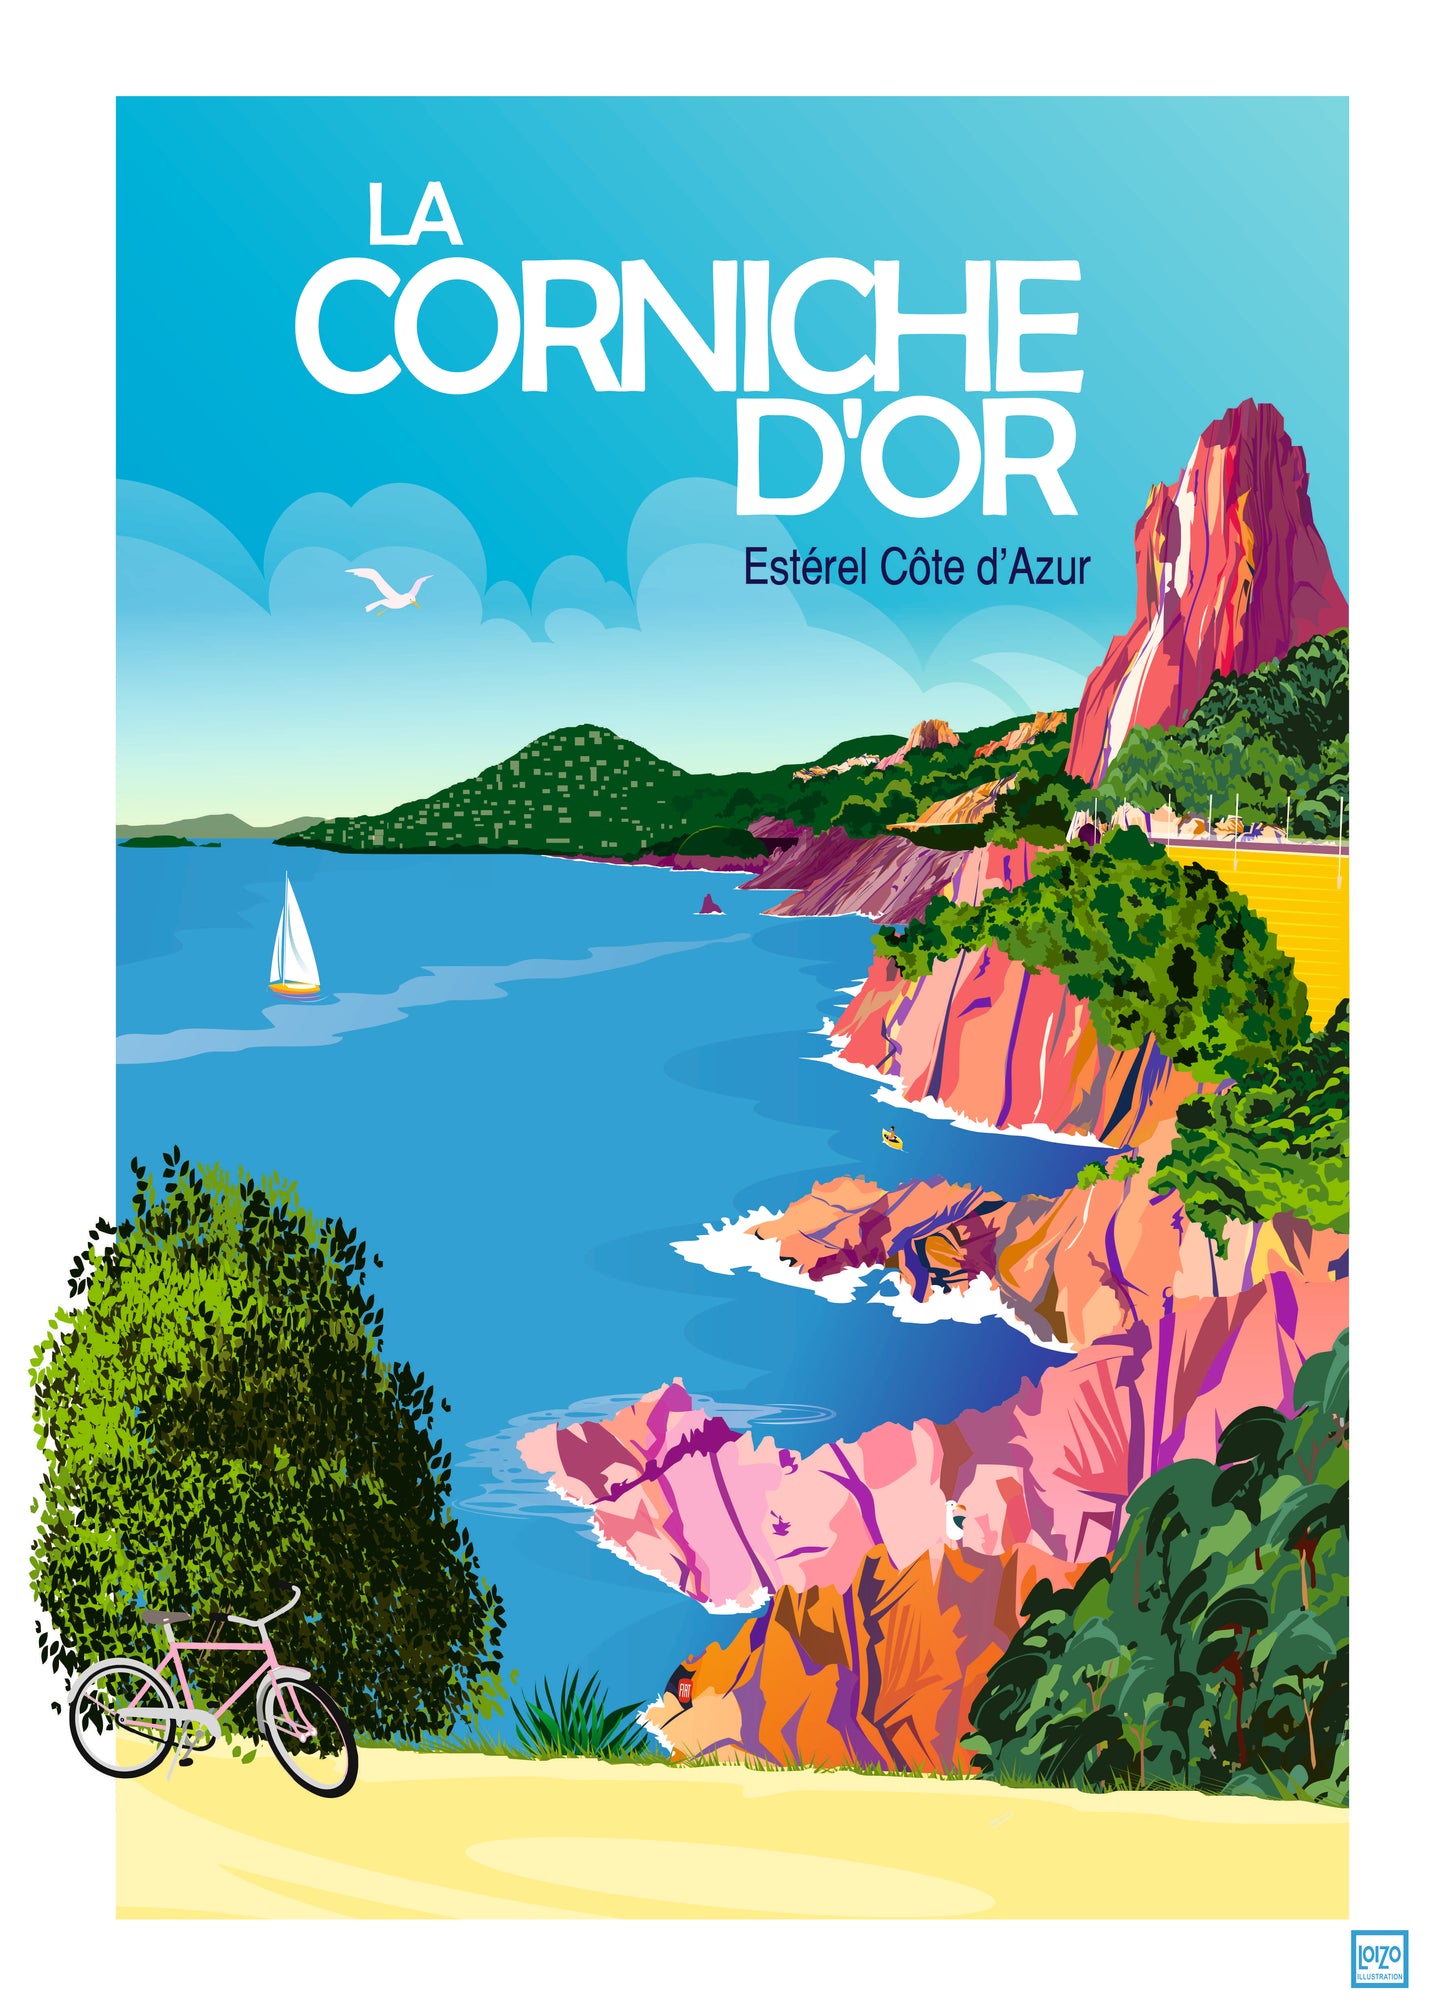 Estérel Côte d'Azur " La Corniche d'Or"